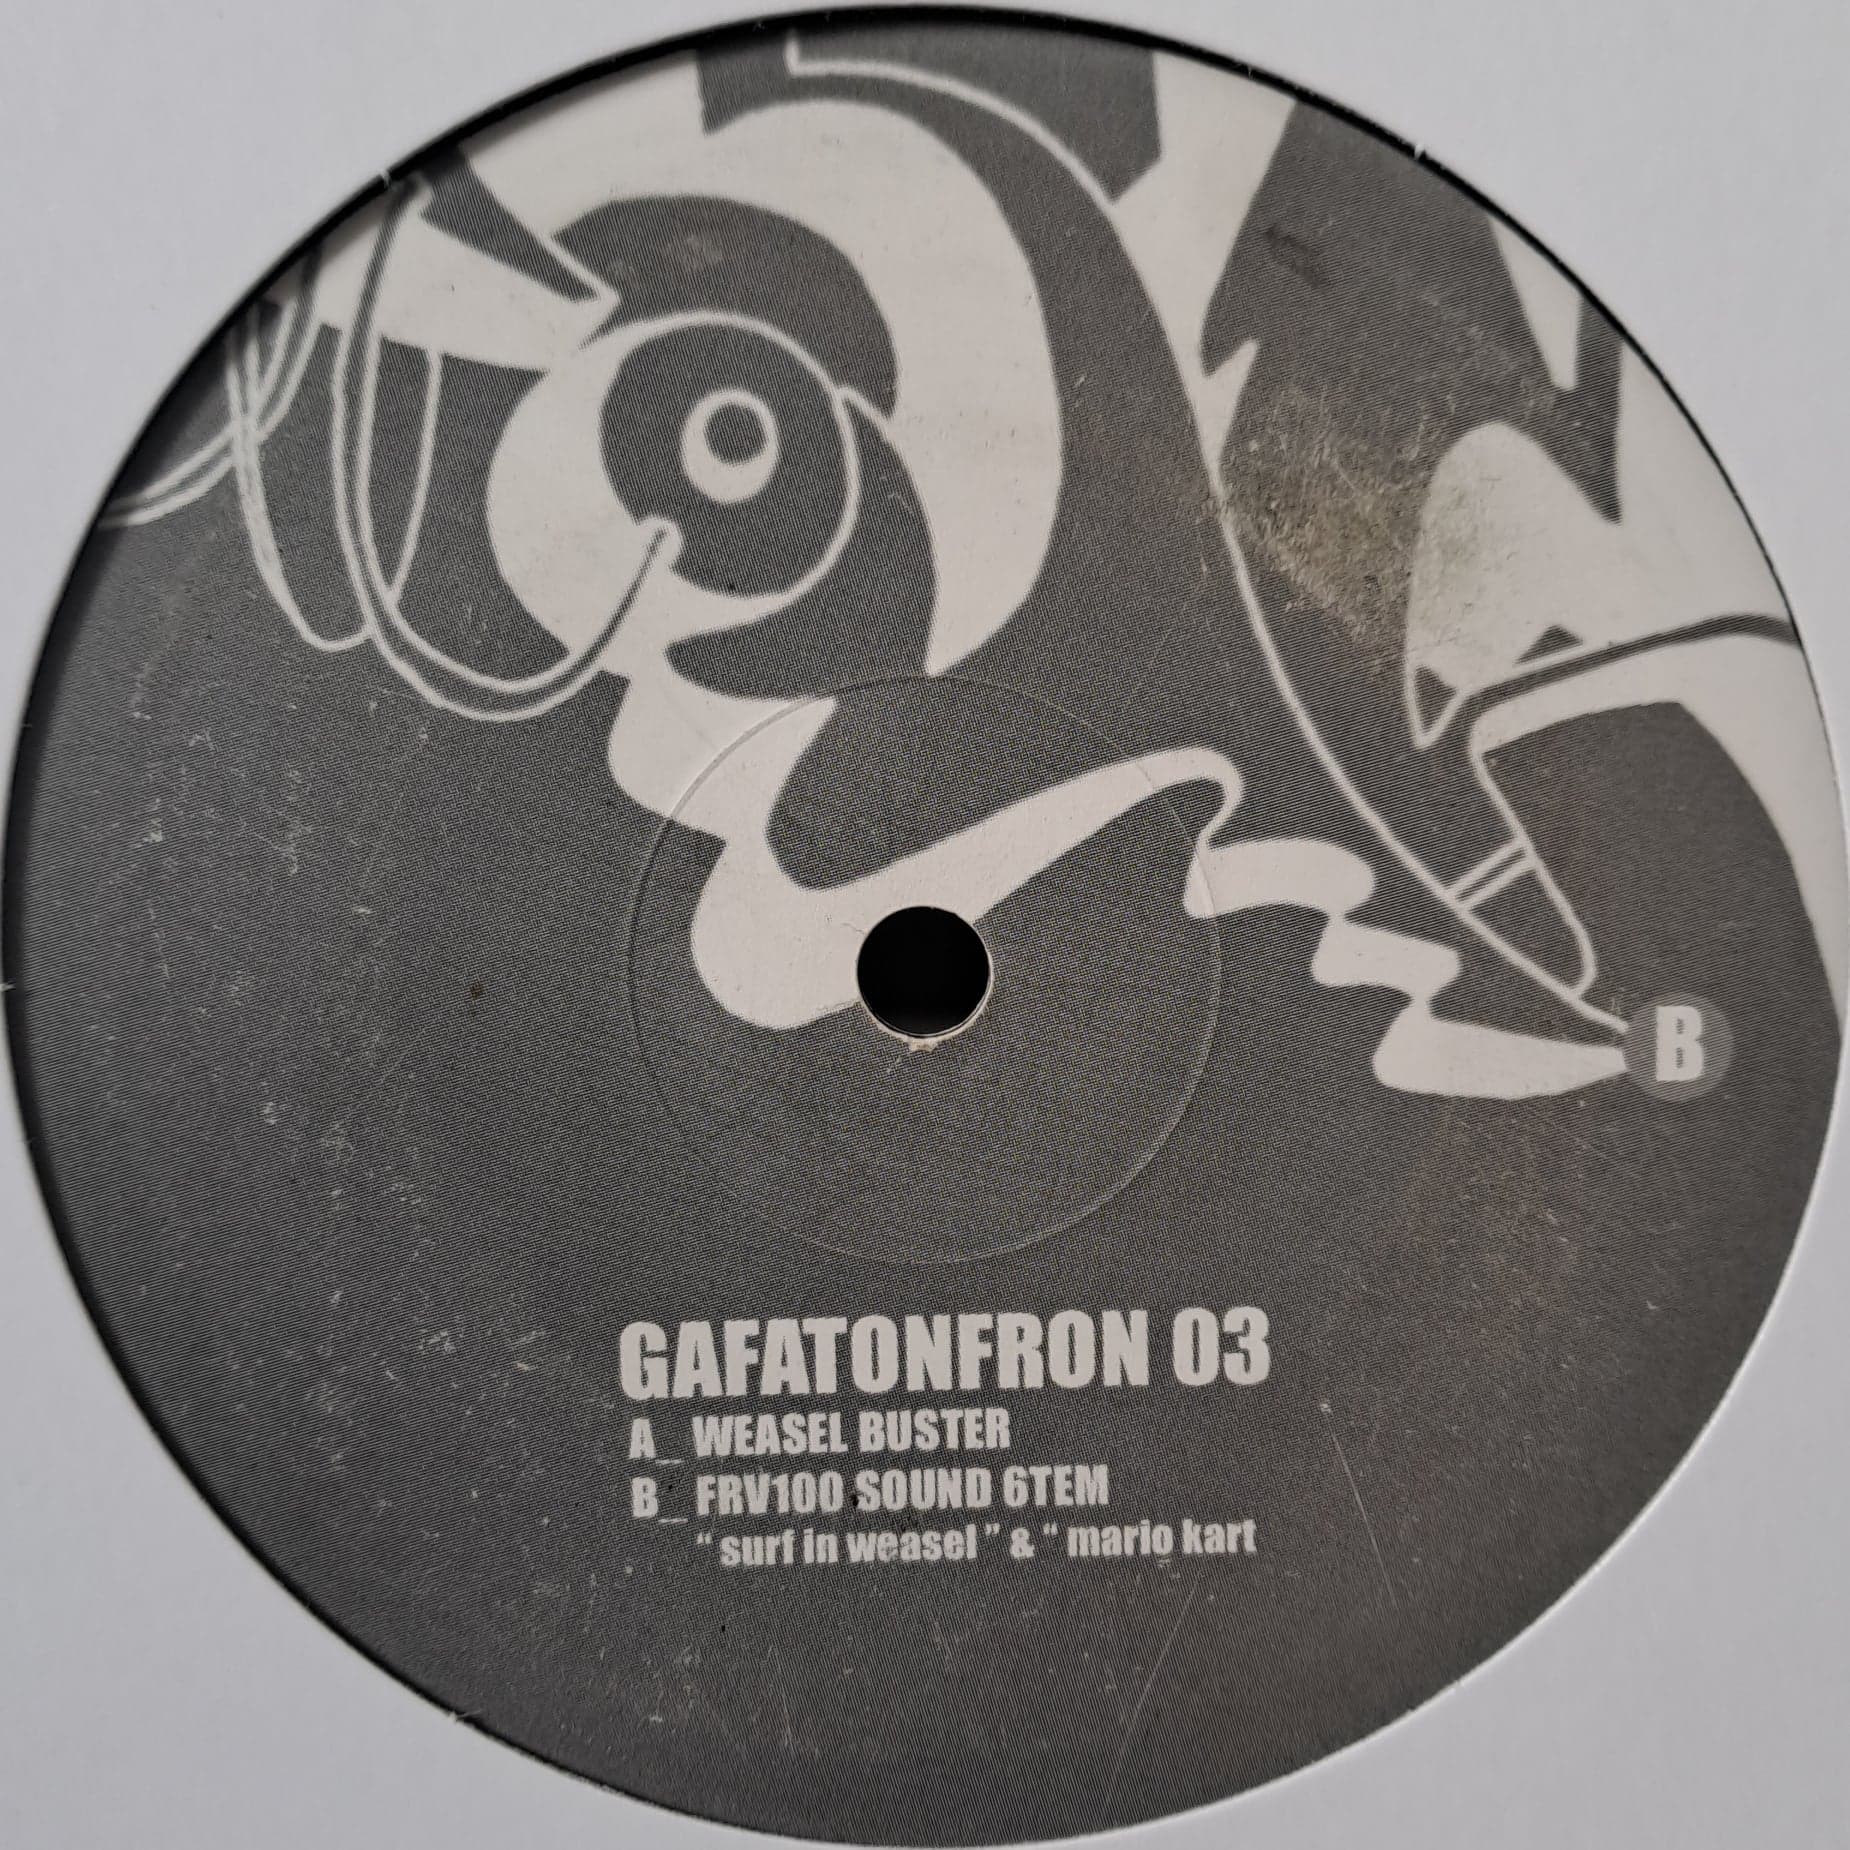 Gafatonfron 03 - vinyle freetekno